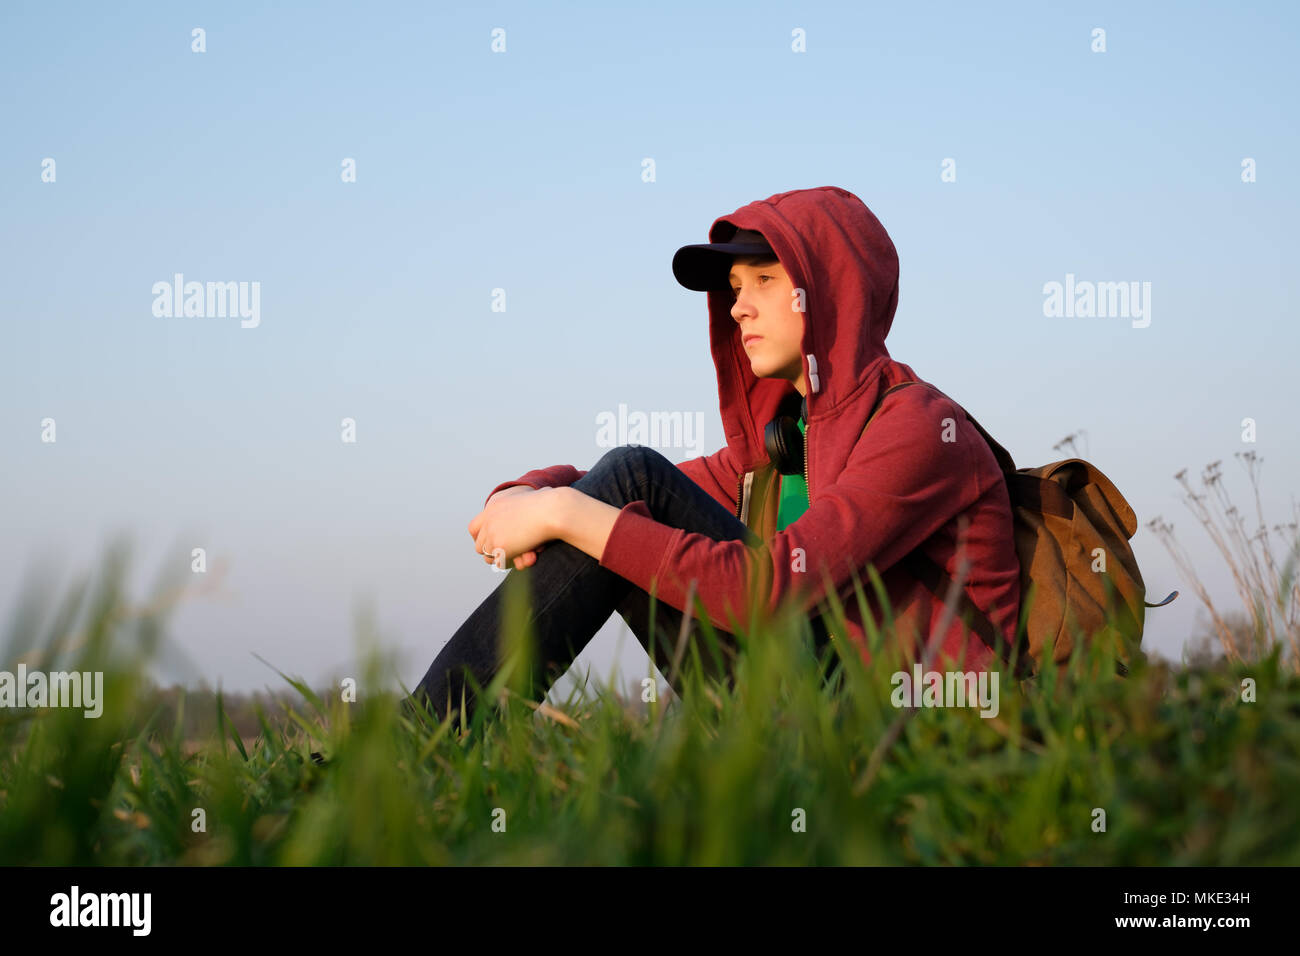 Adolescent sur pelouse verte Banque D'Images